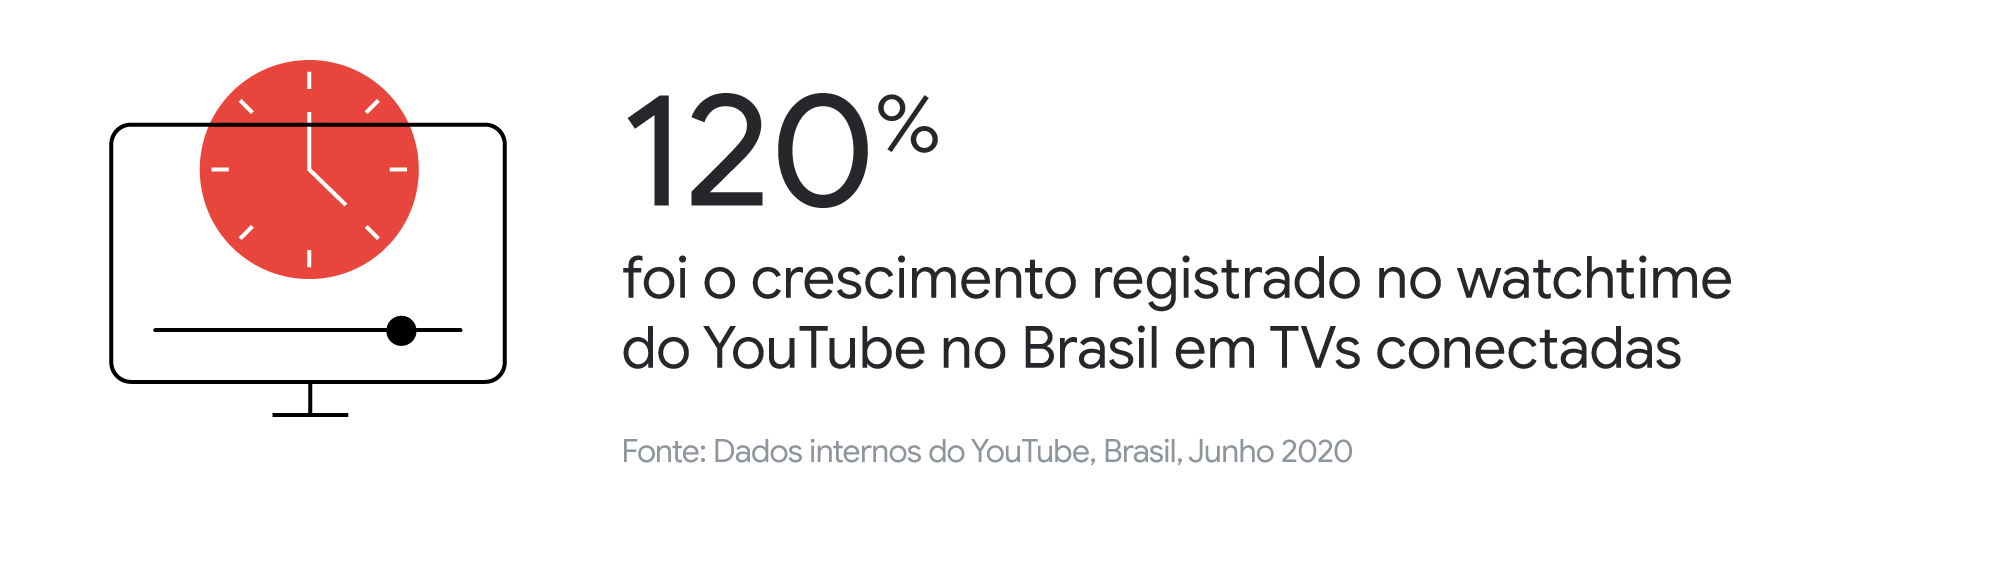 Conheça os hábitos das pessoas que assistem YouTube na TV — no Brasil e no mundo